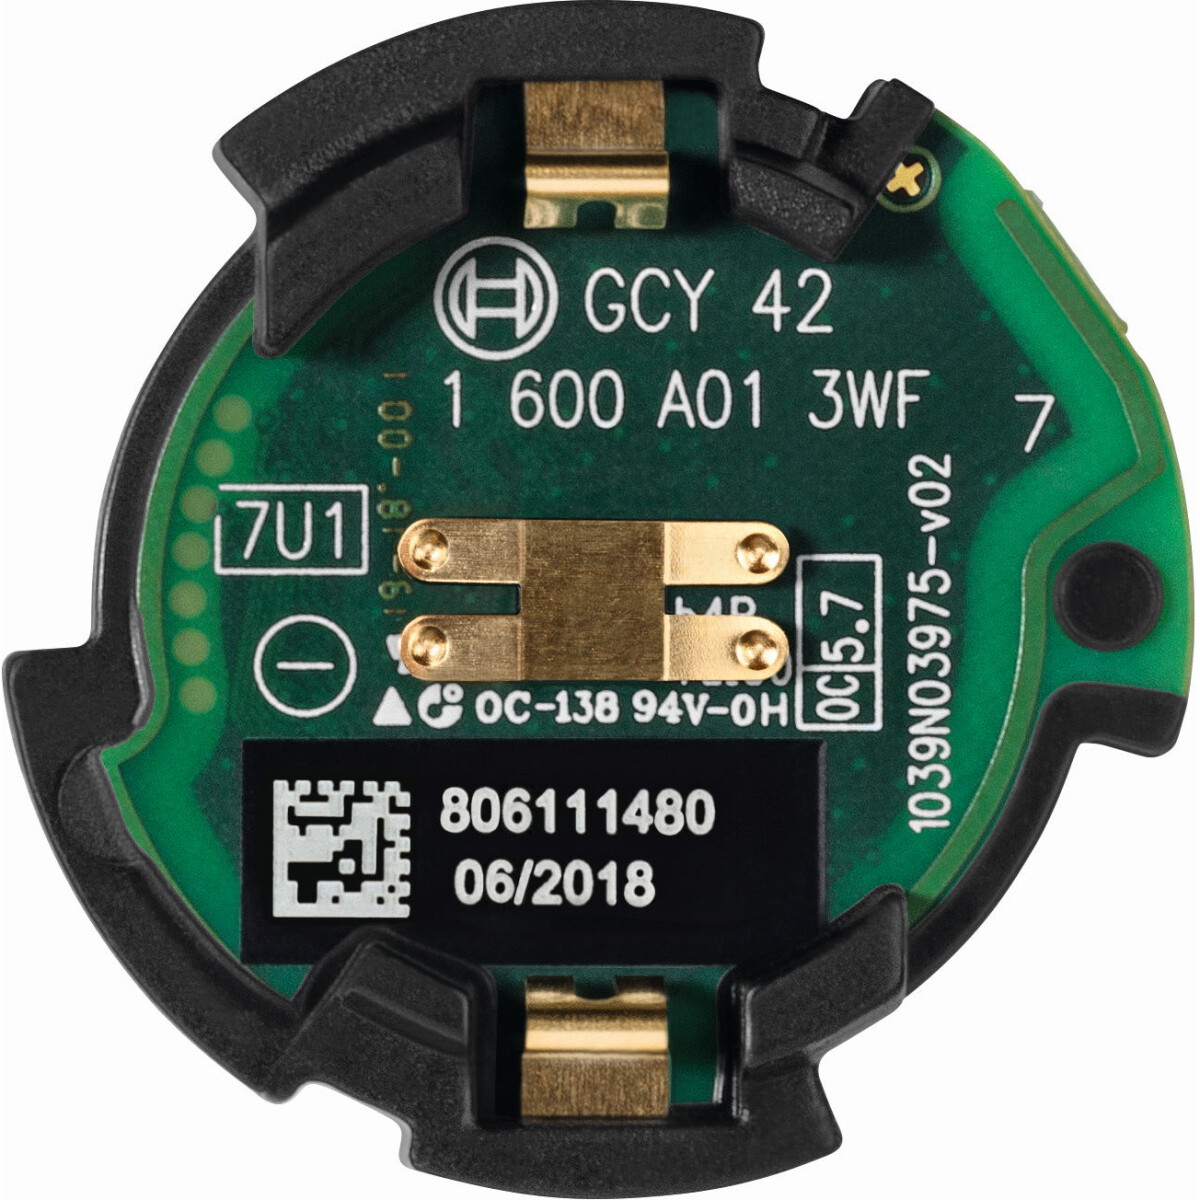 Bosch GCY42 18V Connectivity Module